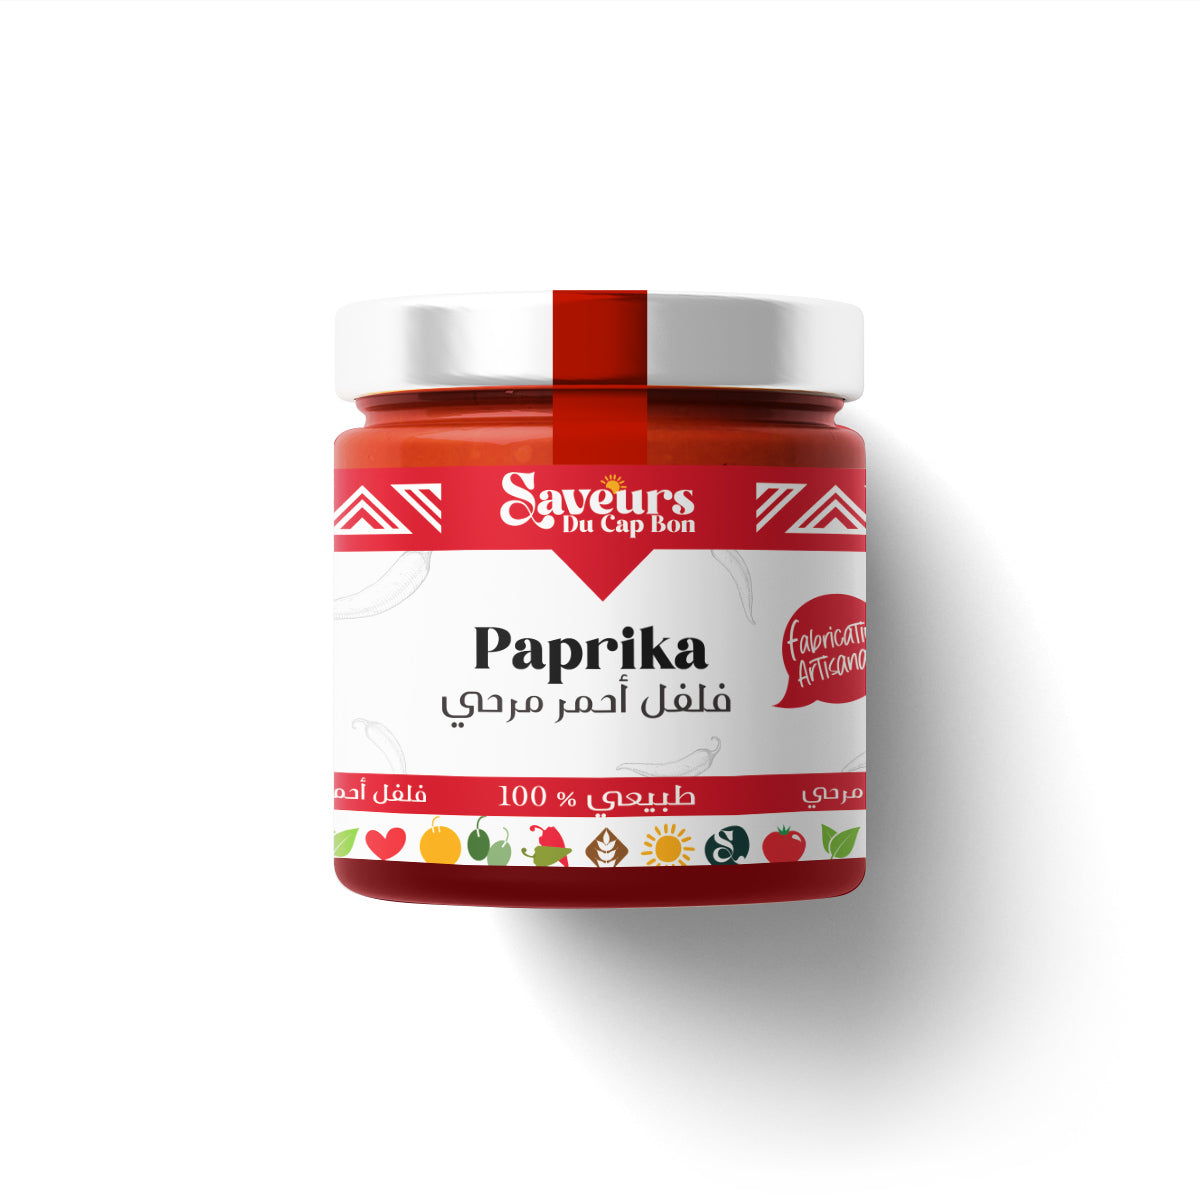 Paprika in a pot - فلفل أحمر مرحي